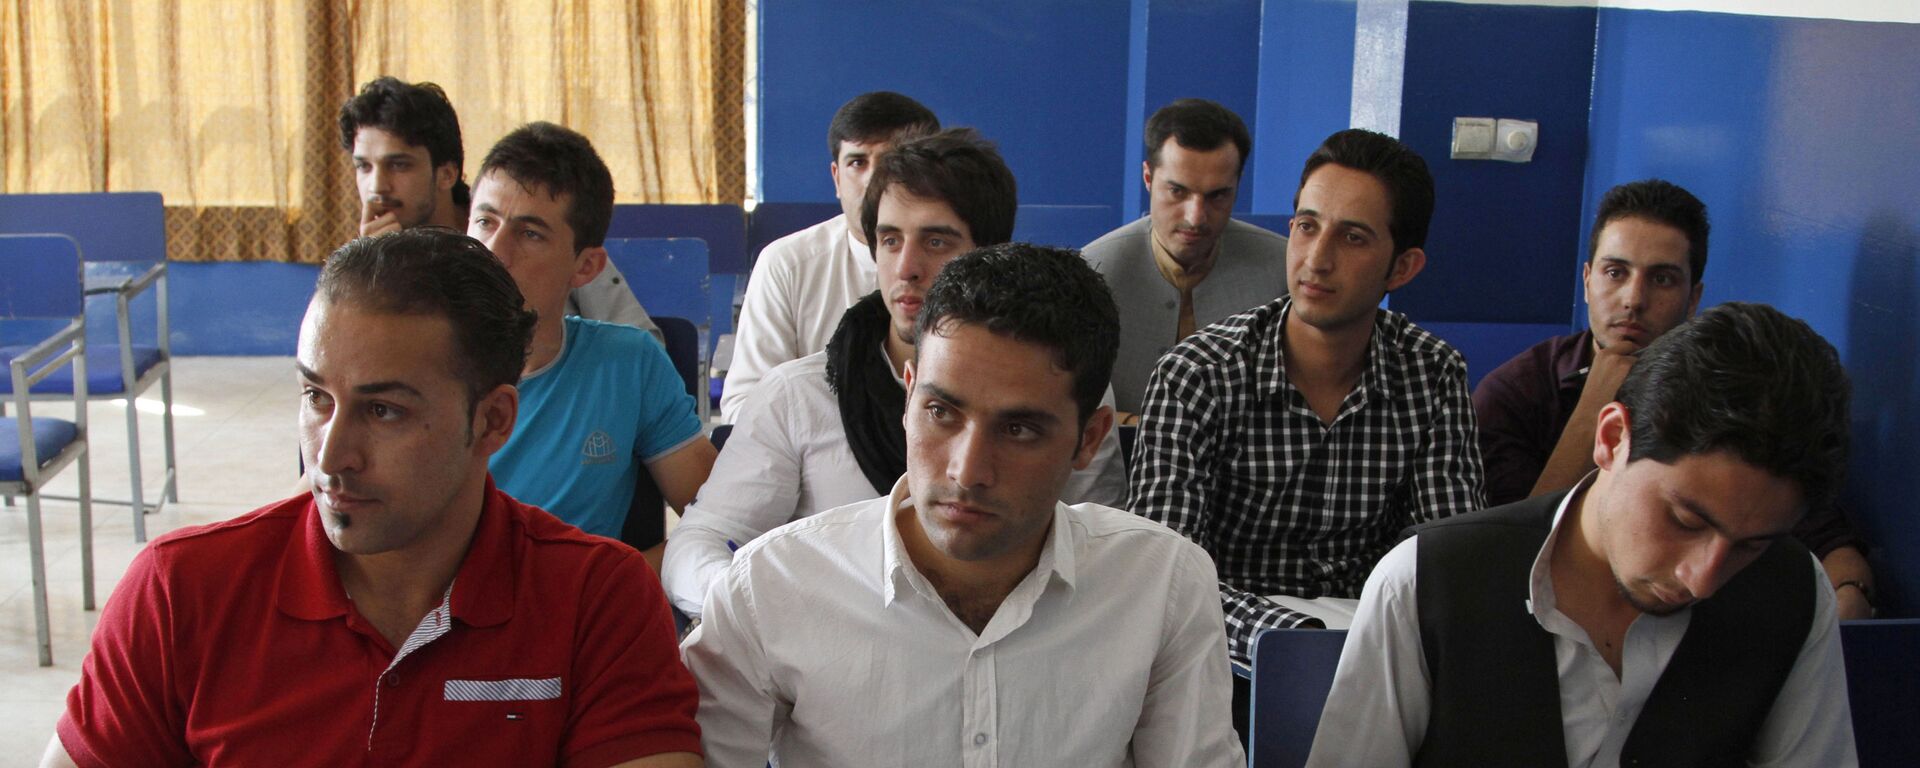 Афганские студенты на уроке - Sputnik Таджикистан, 1920, 01.09.2021